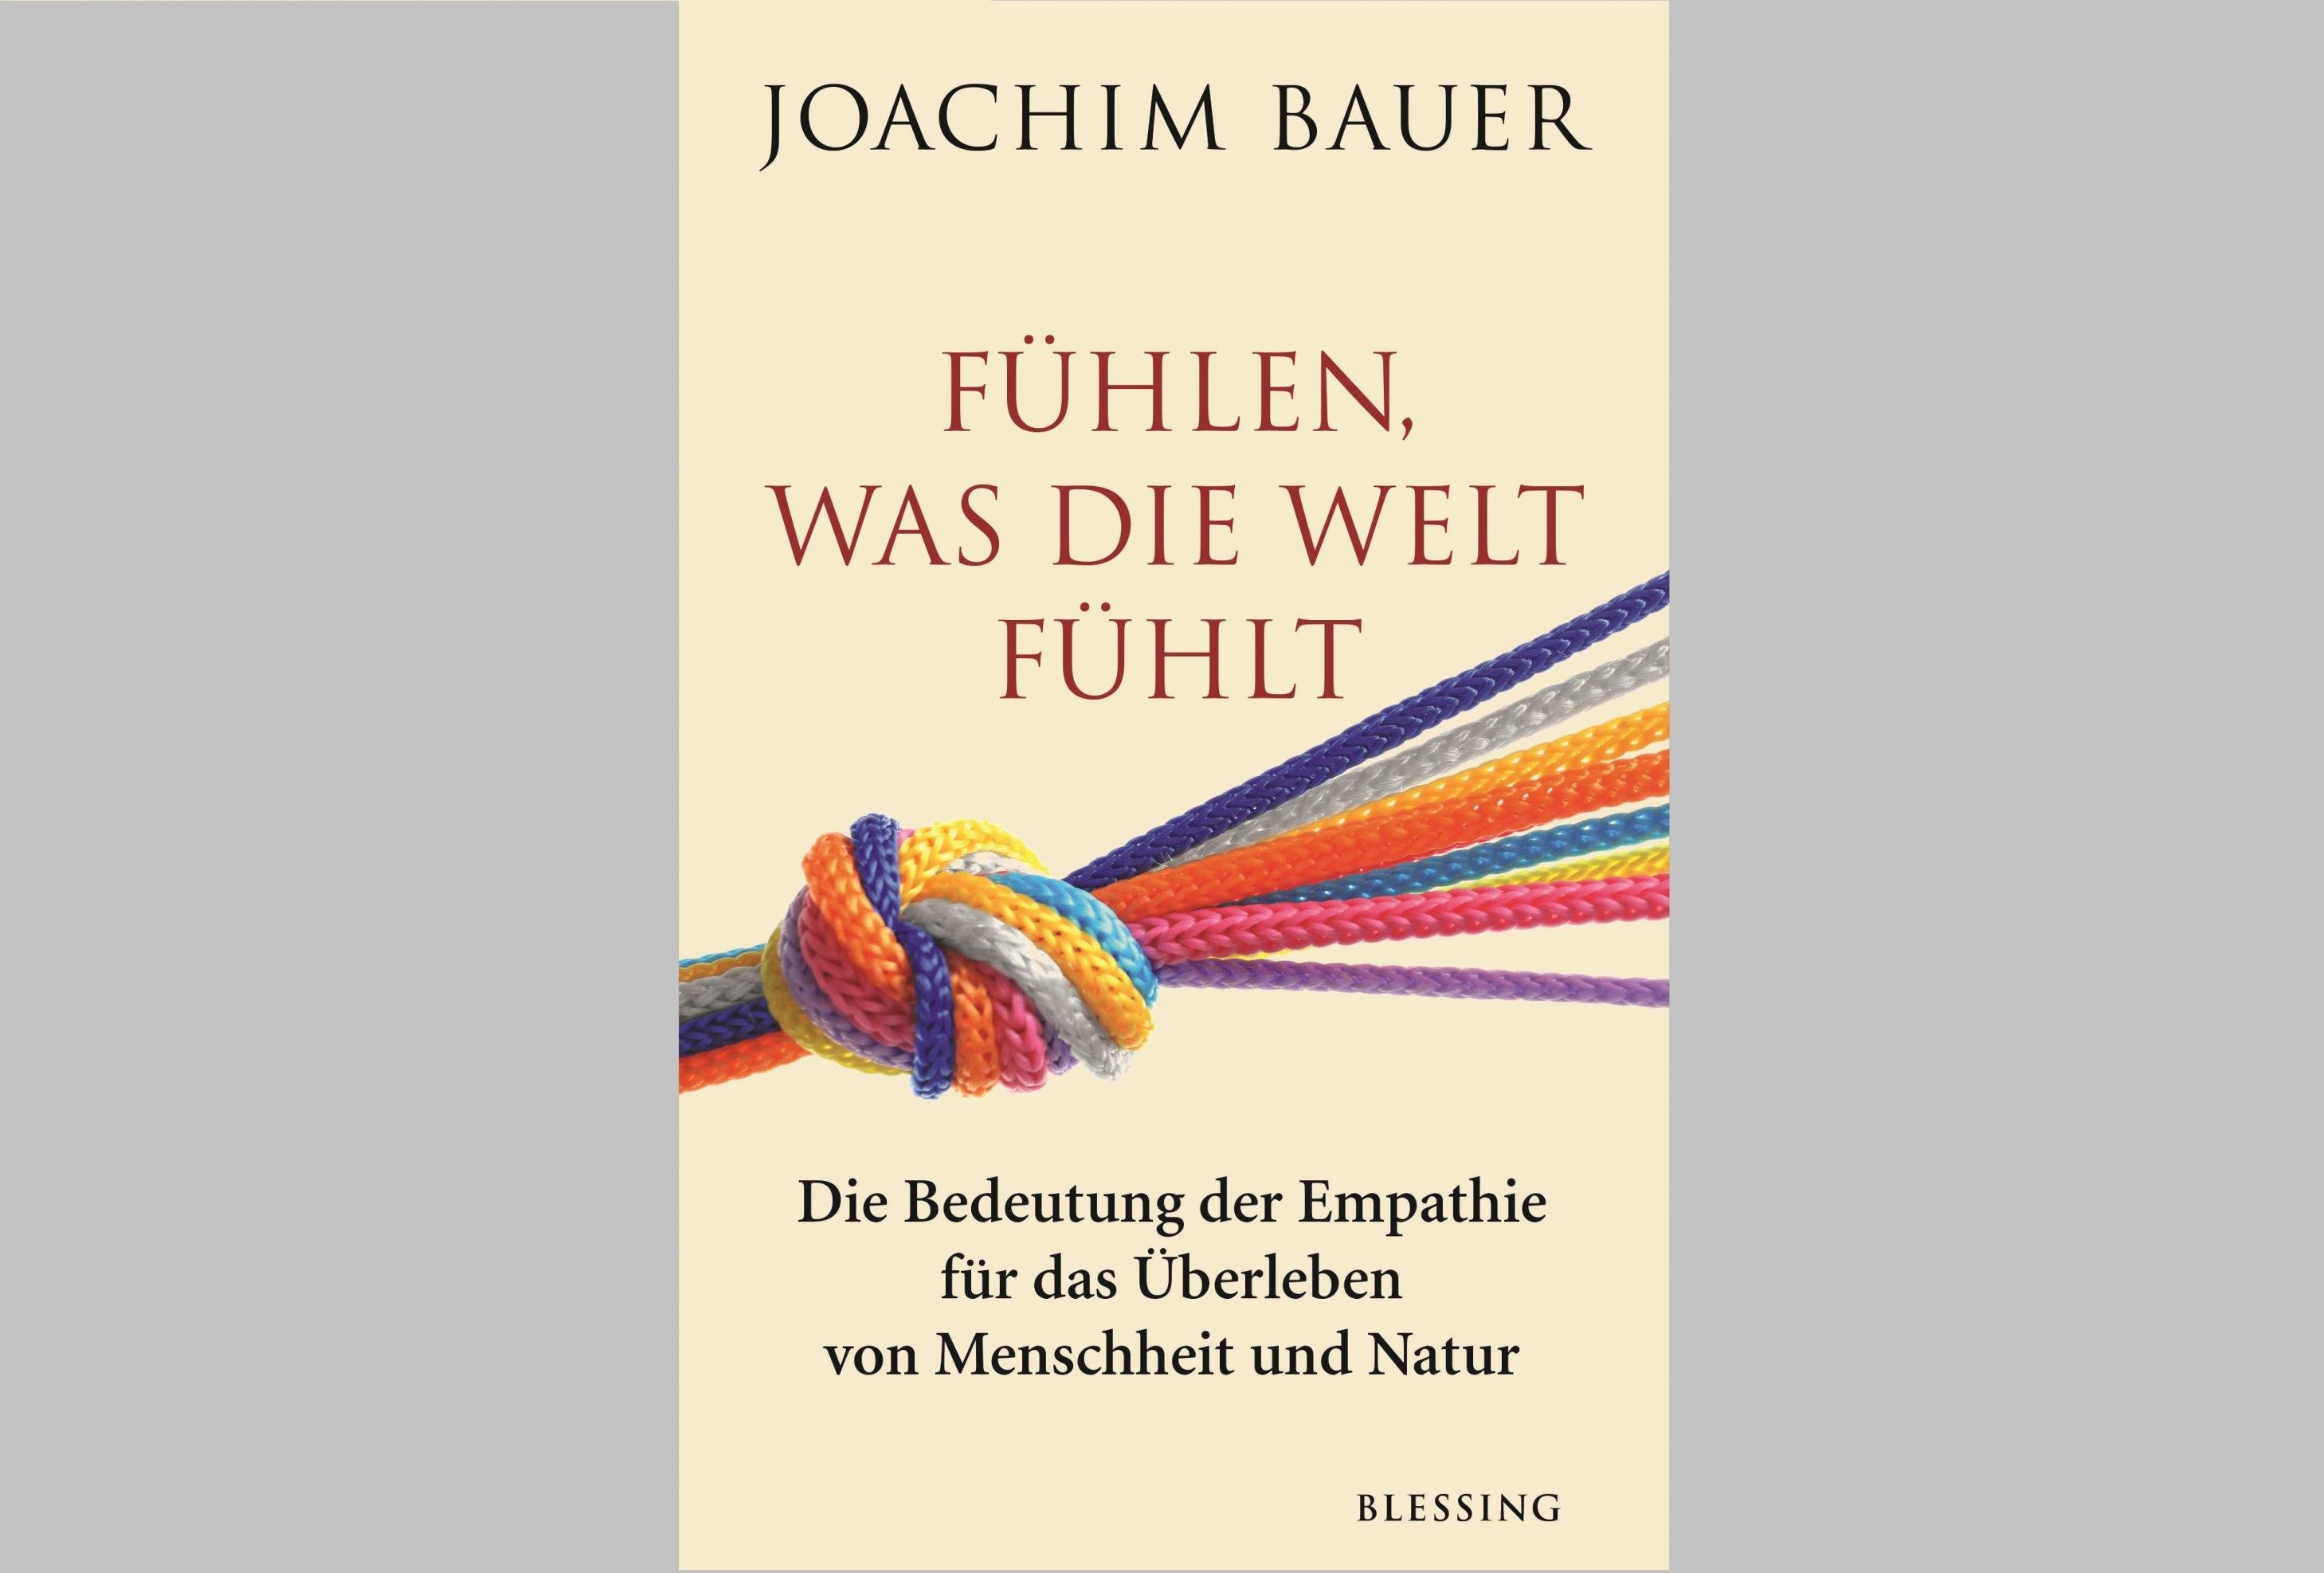 Buchcover: Joachim Bauer: Fühlen was die Welt fühlt. Die Bedeutung der Empathie für das Überleben von Menschheit und Natur. Blessing Verlag.